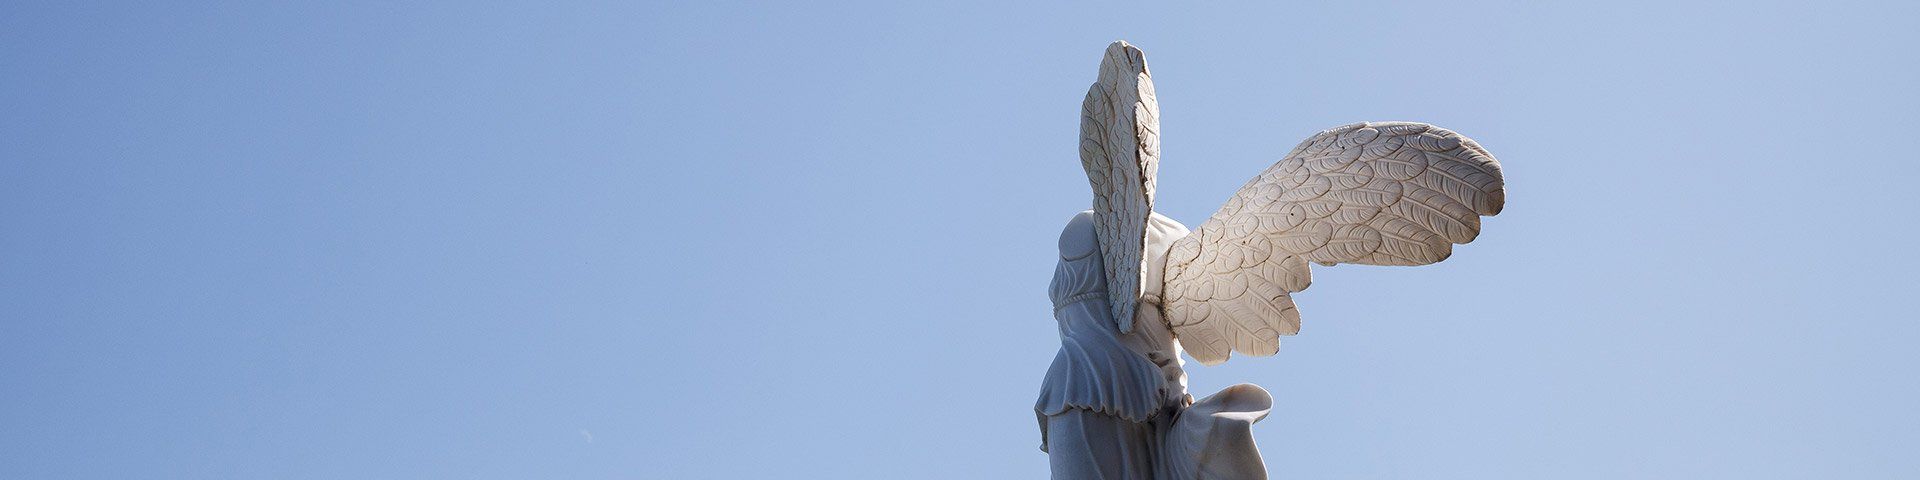 Photo de la statue Victoire de Samothrace de dos.